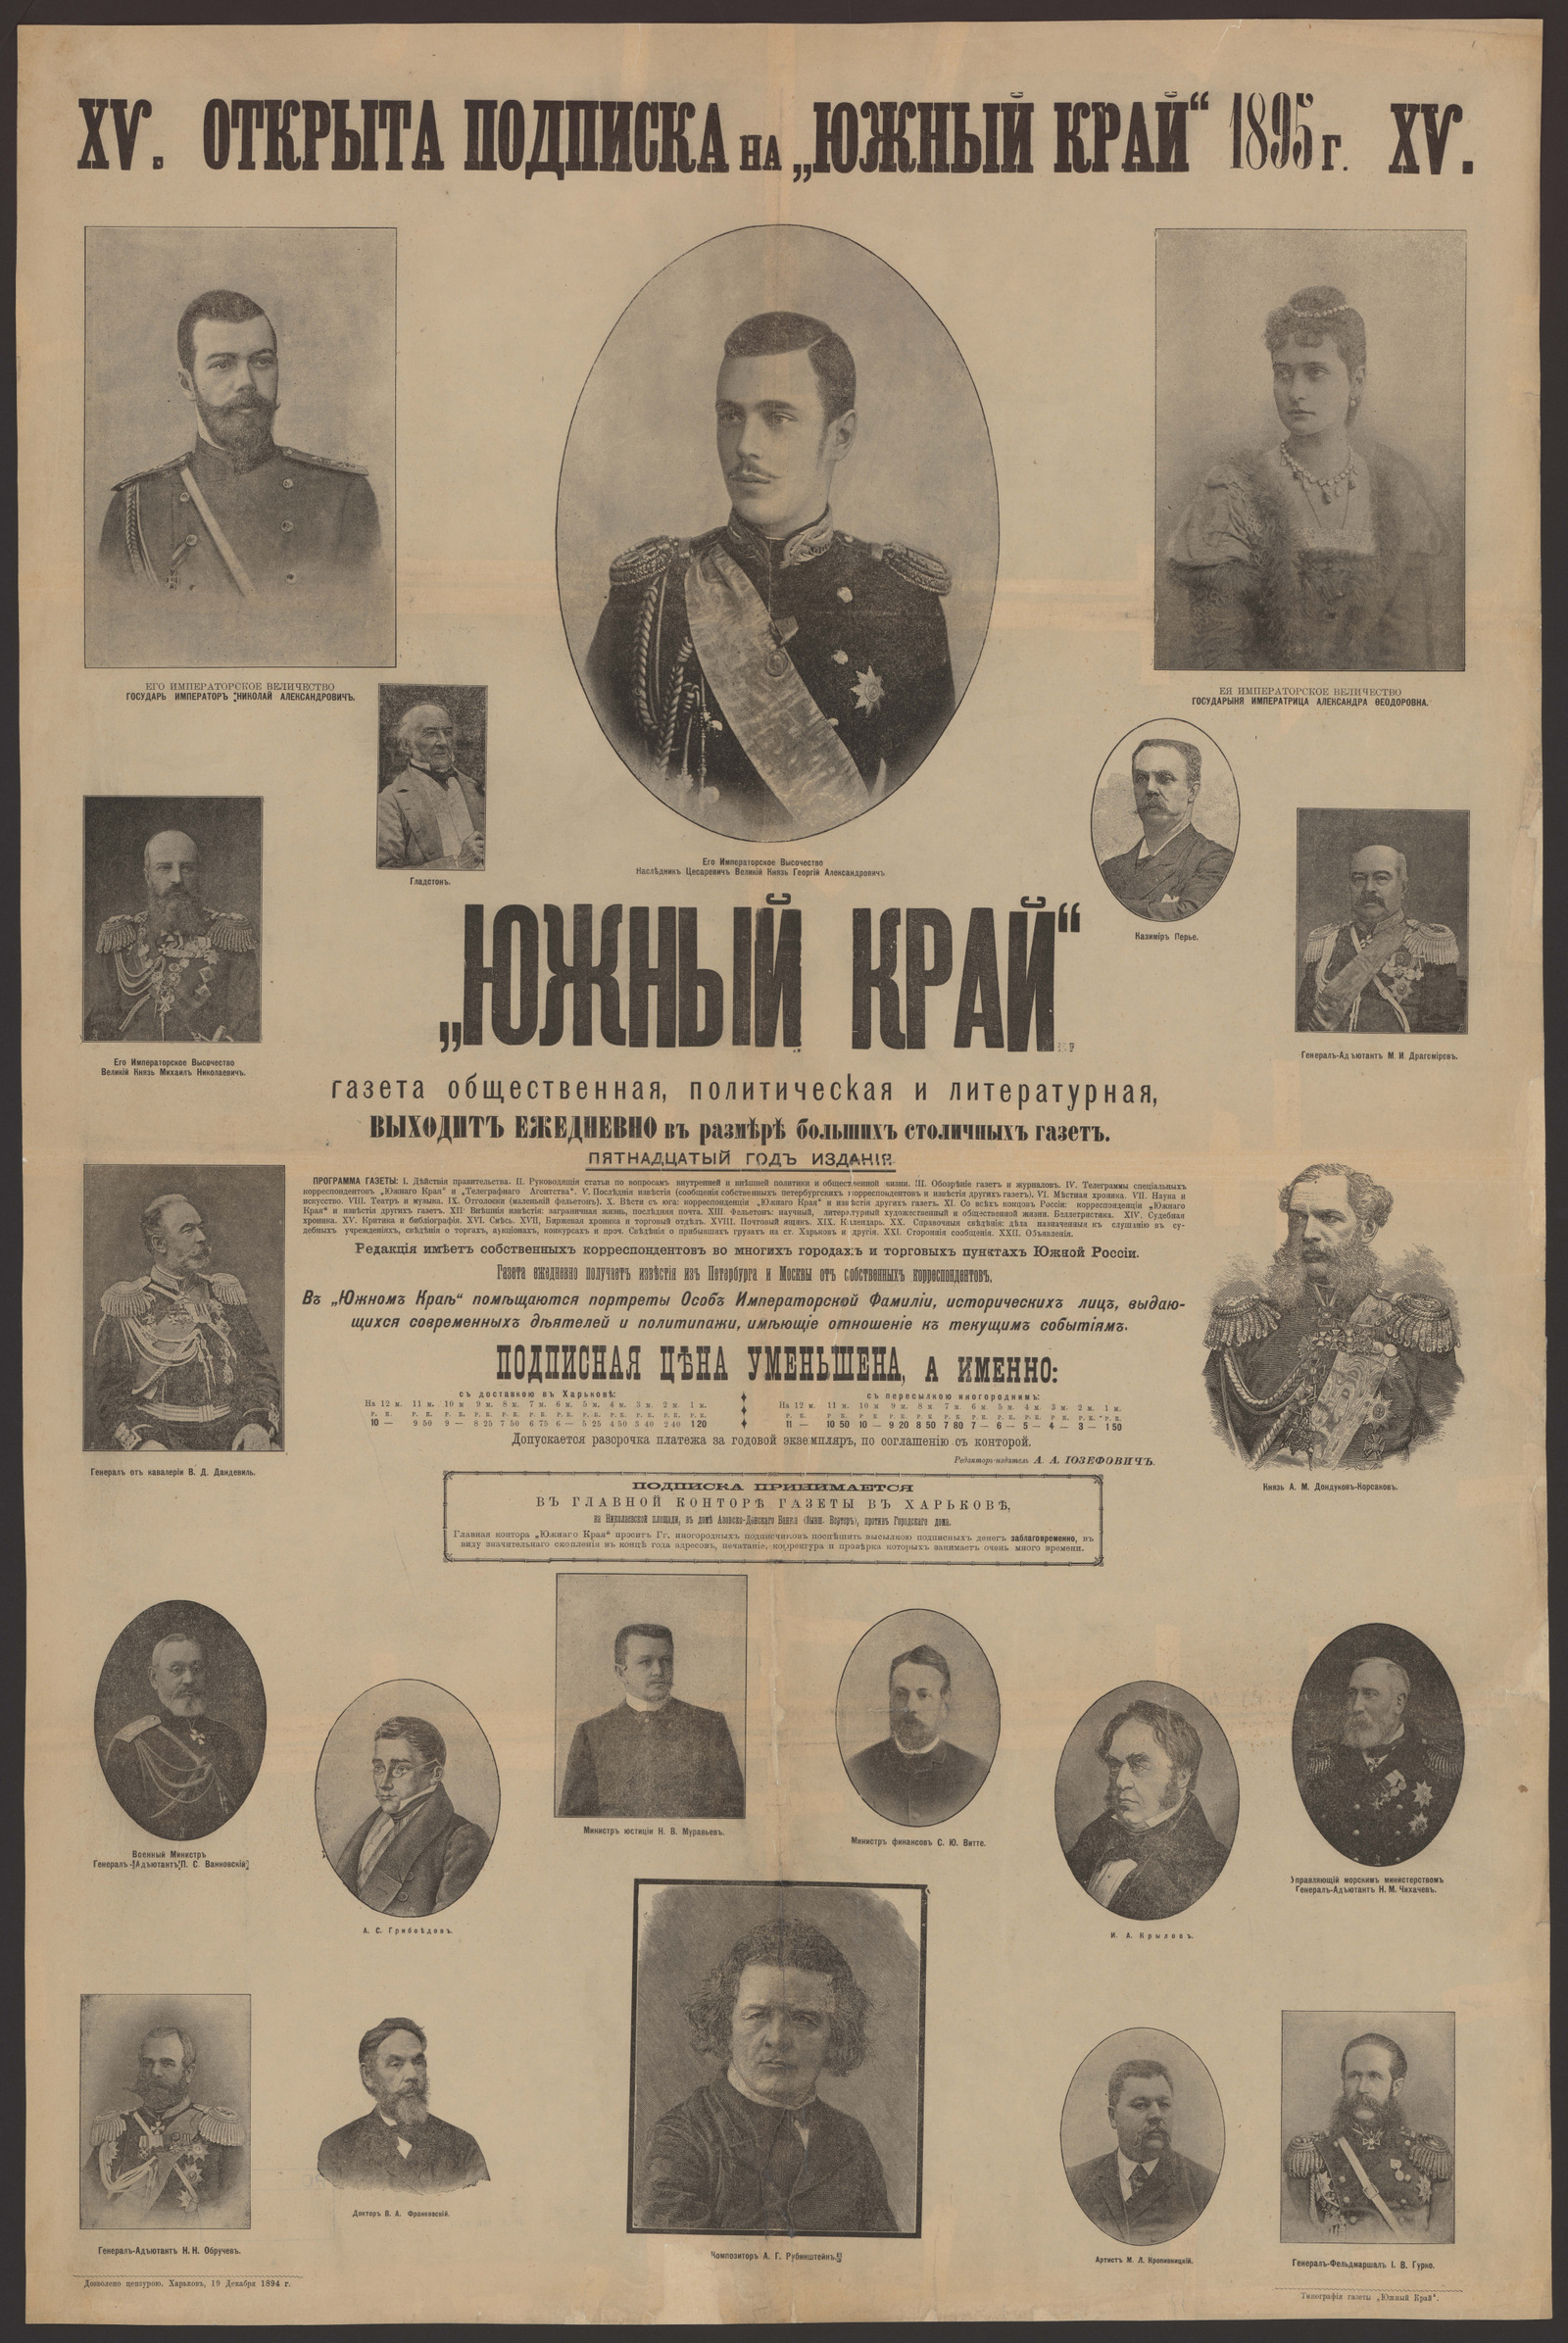 Изображение книги "Южный край". Газета общественная, политическая и литературная. Открыта подписка на "Южный край" 1895 года